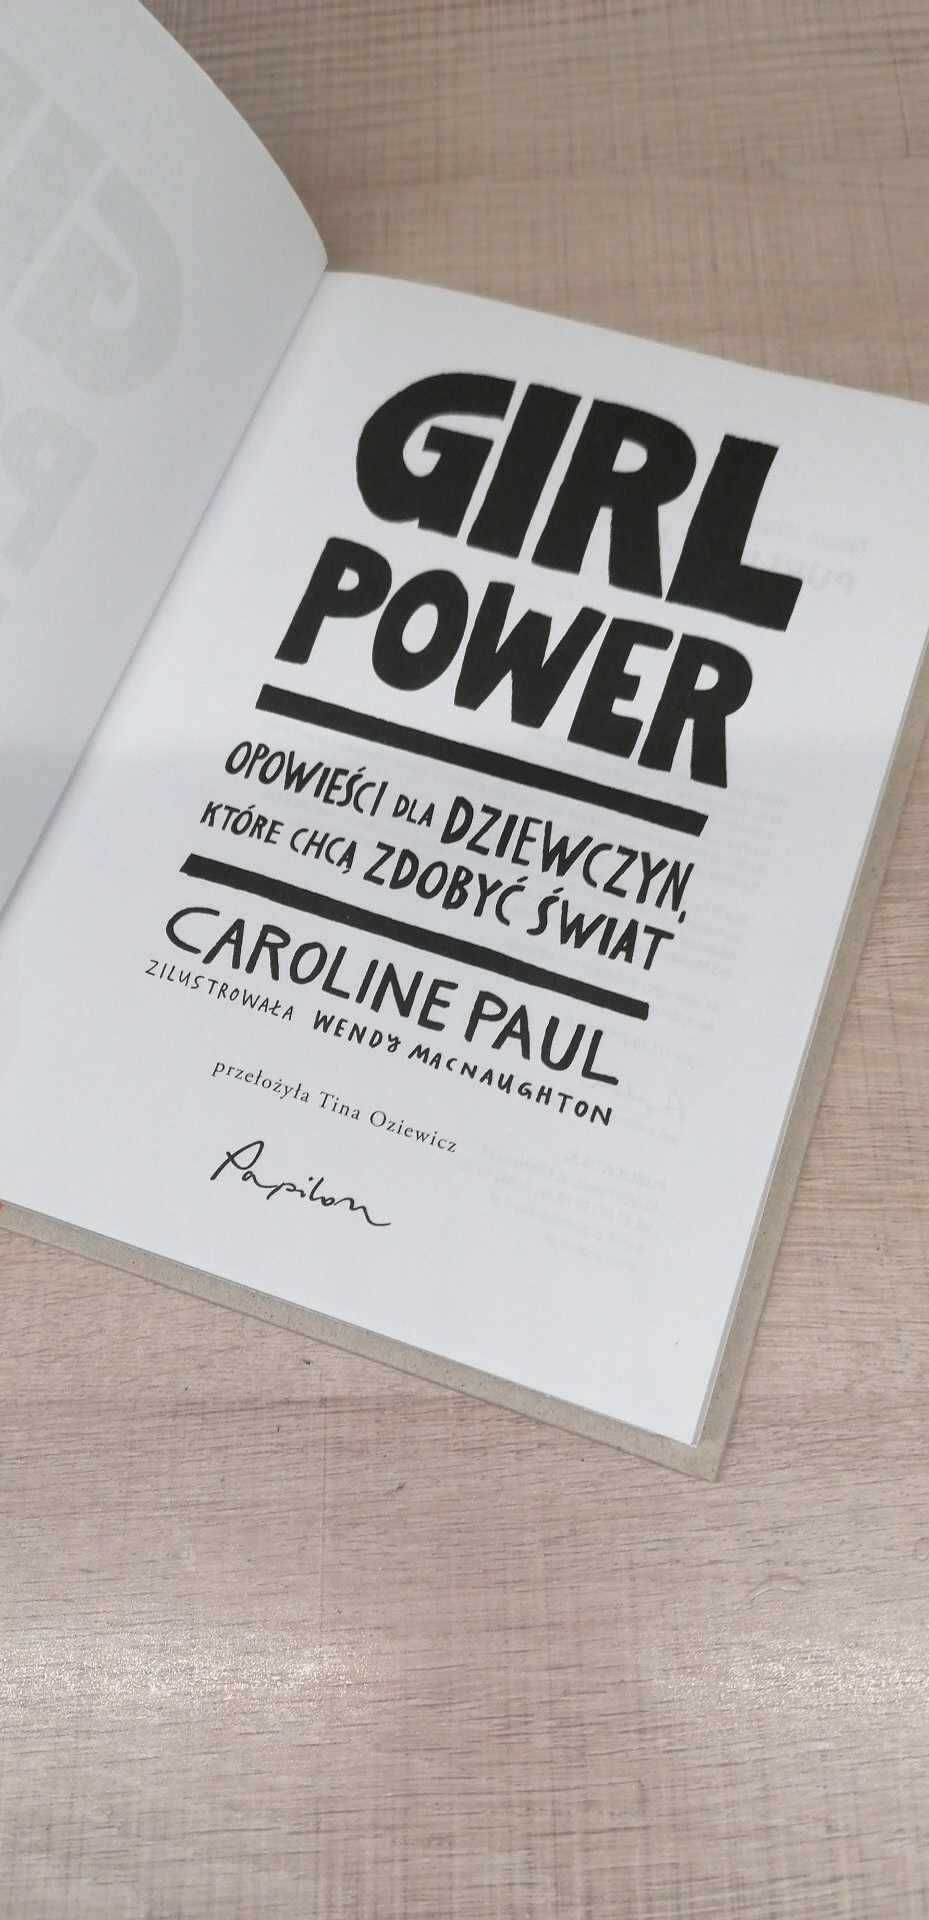 Książka "Girl power" Caroline Paul